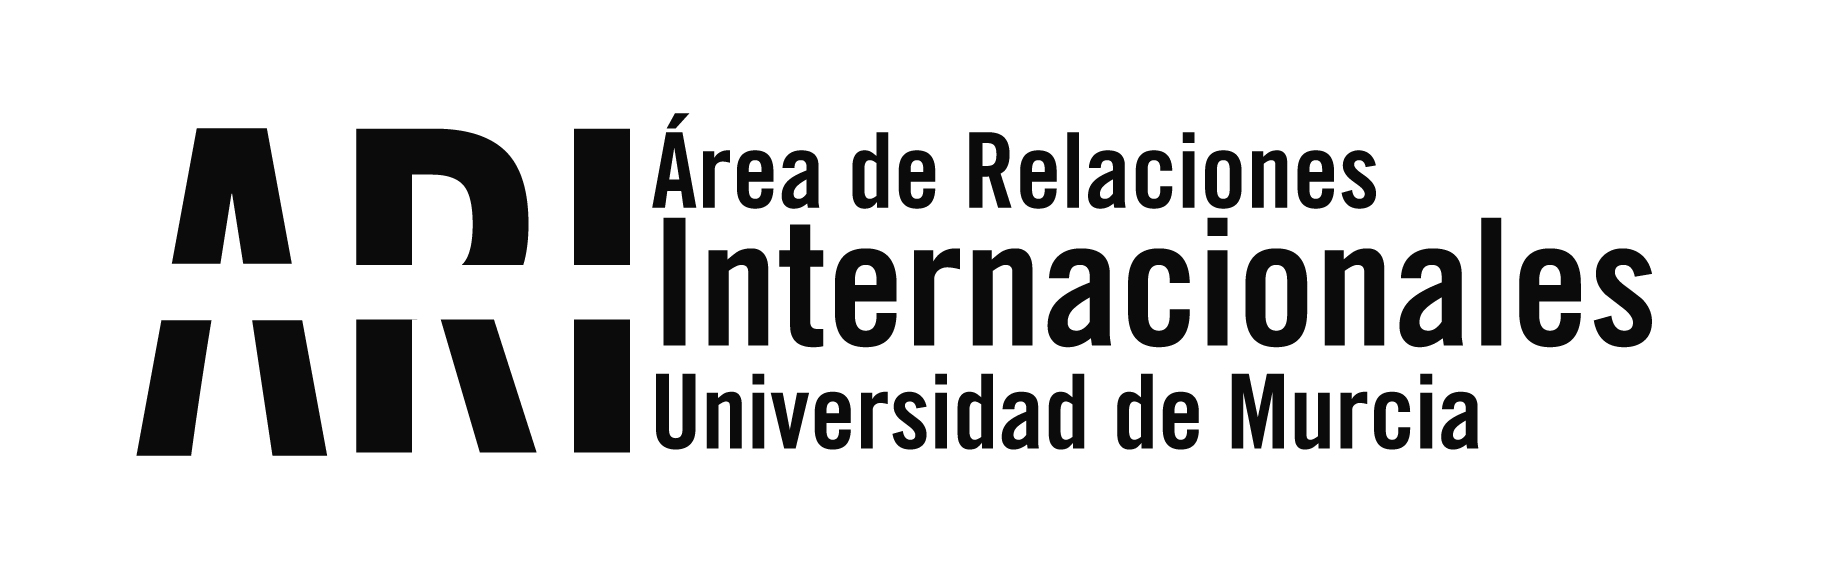 La Universidad de Murcia lidera un consorcio europeo para la enseñanza digital de la Historia de Europa - Área de Relaciones Internacionales